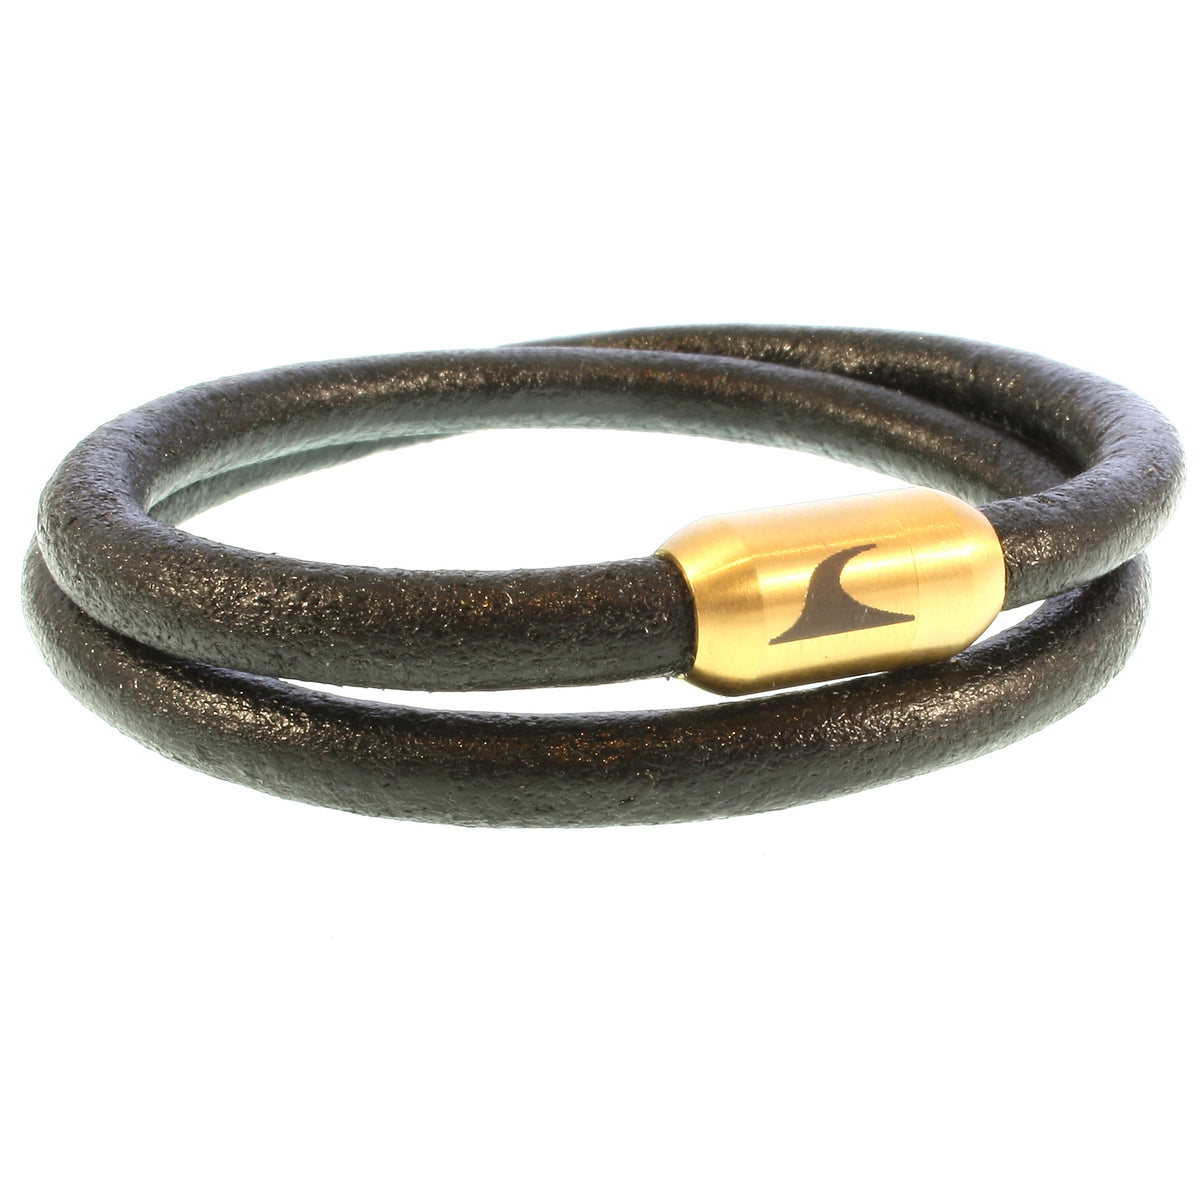 Herren-Leder-Armband-hawaii-schwarz-gold-massiv-Edelstahlverschluss-vorn-wavepirate-shop-r